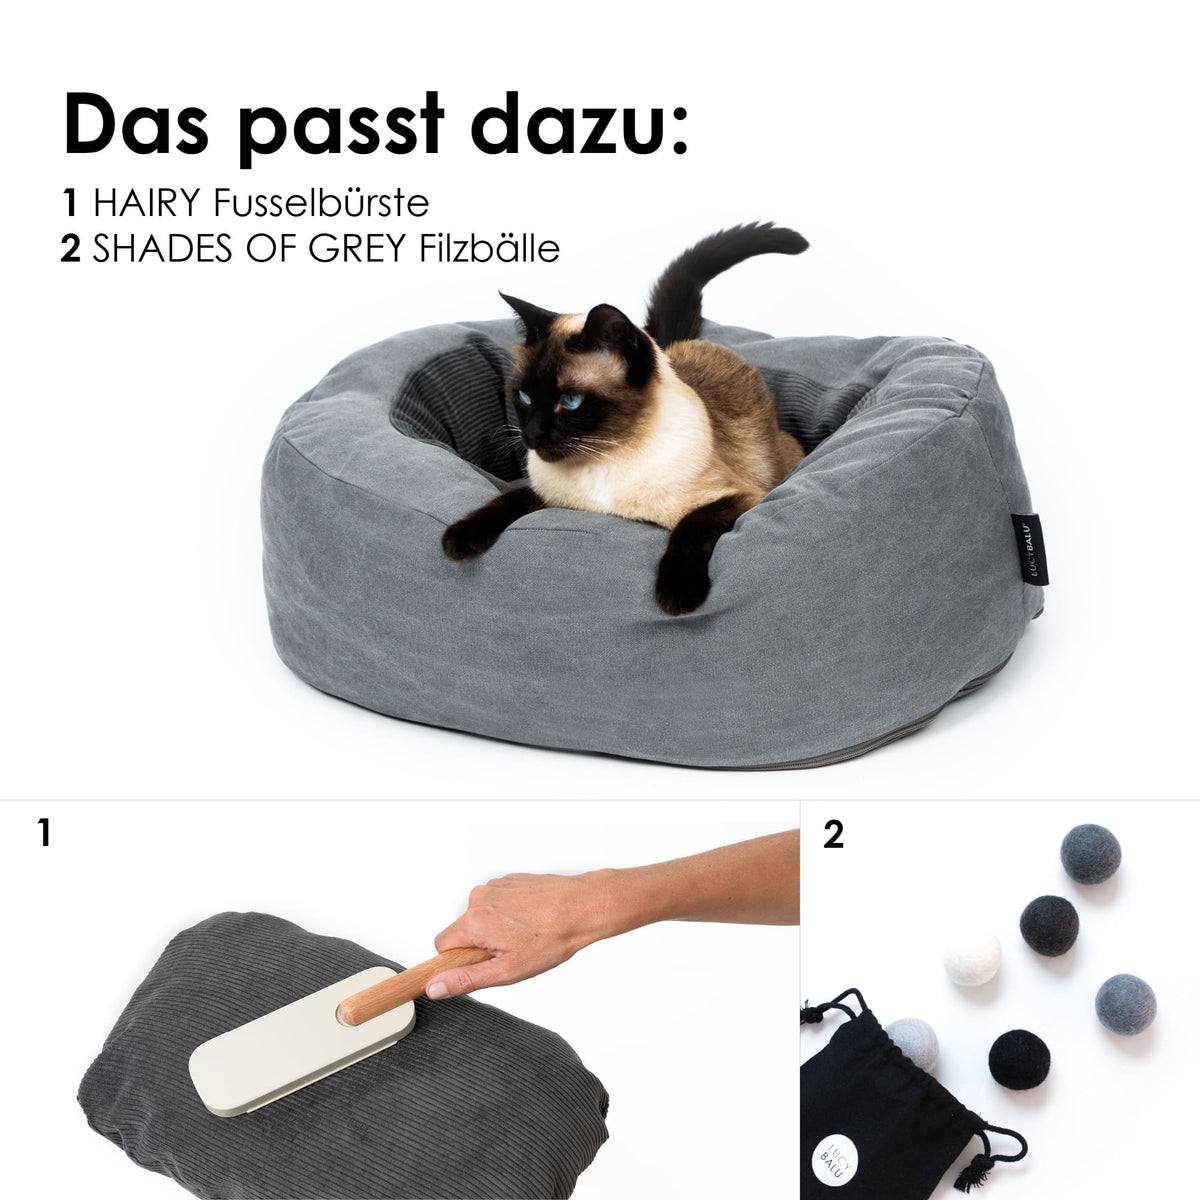 Passende Produkte für das Katzenbett